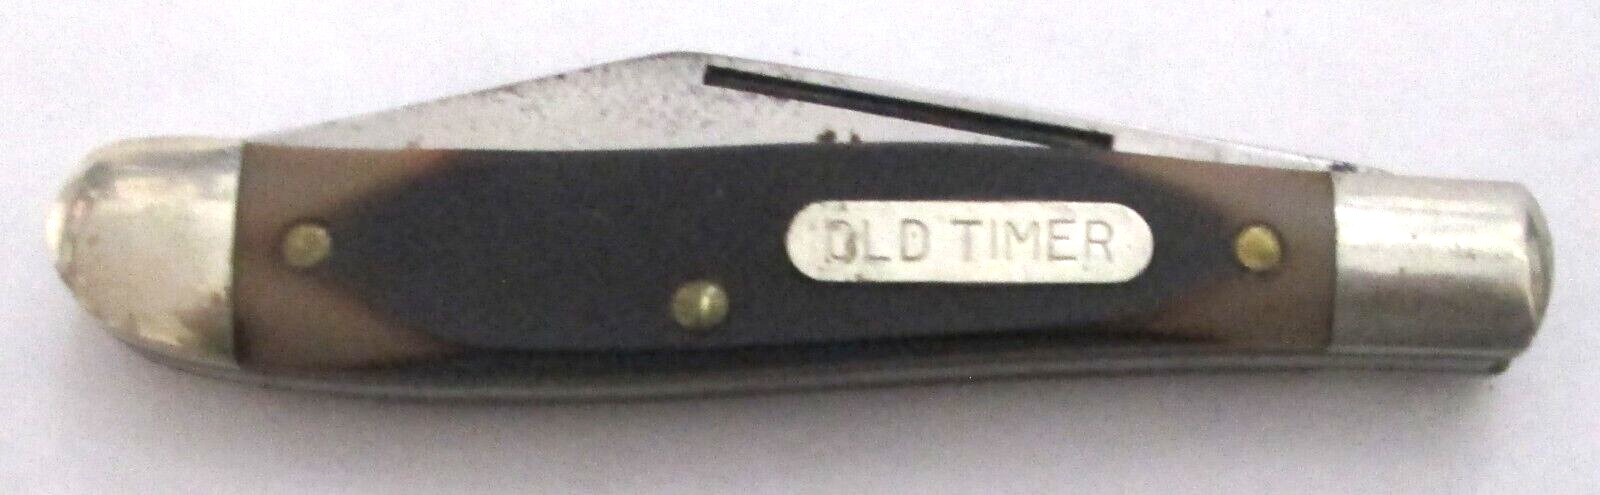 Vintage Schrade USA 120T Old Timer Brown Single Blade Pocket Knife